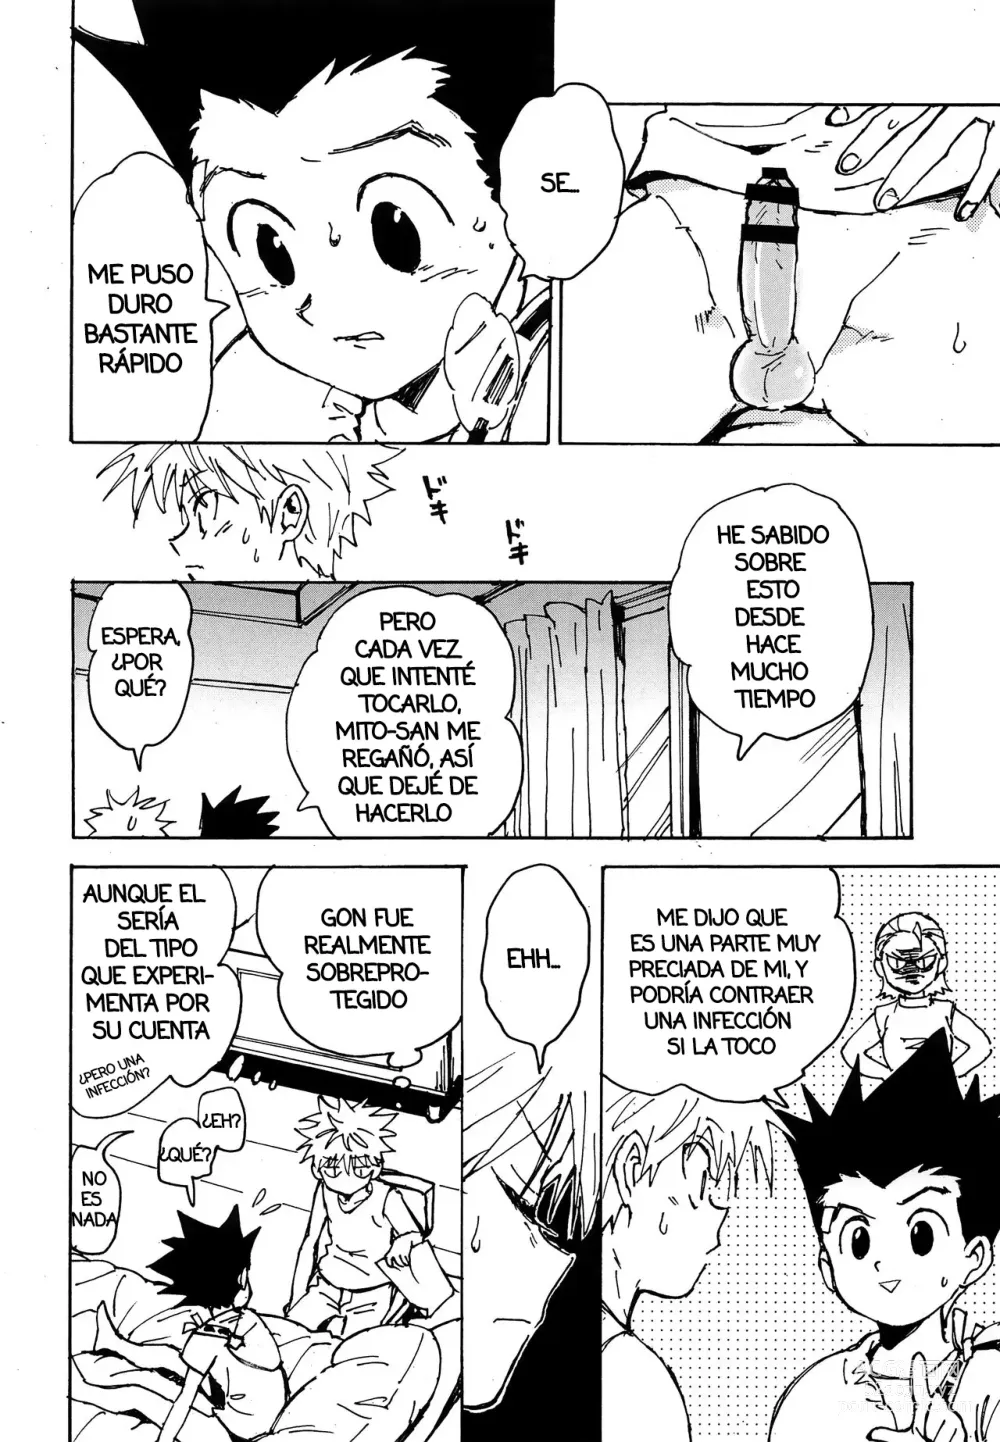 Page 13 of doujinshi Imprudencia Juvenil